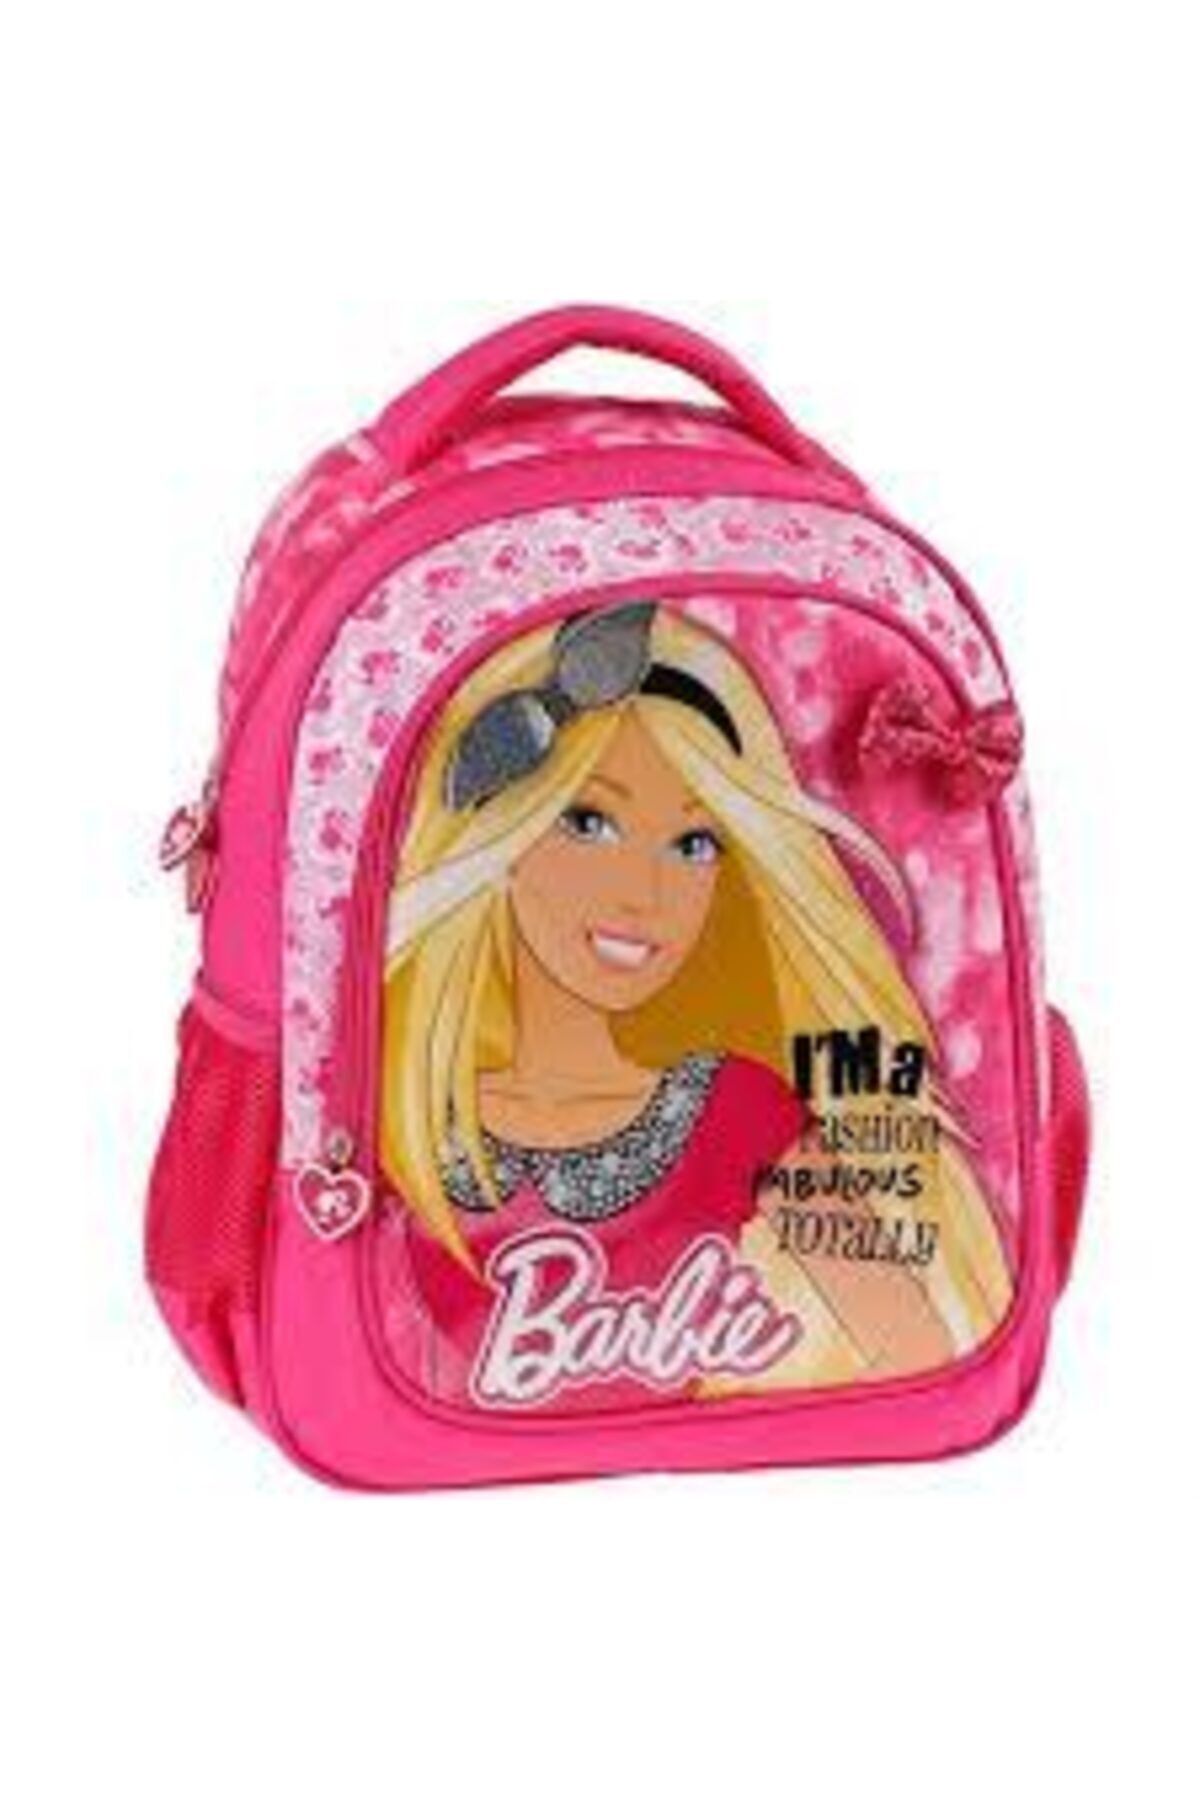 Hakan Çanta Orjınal Lisanslı Barbie Kız Okul Sırt Çantası Modeli